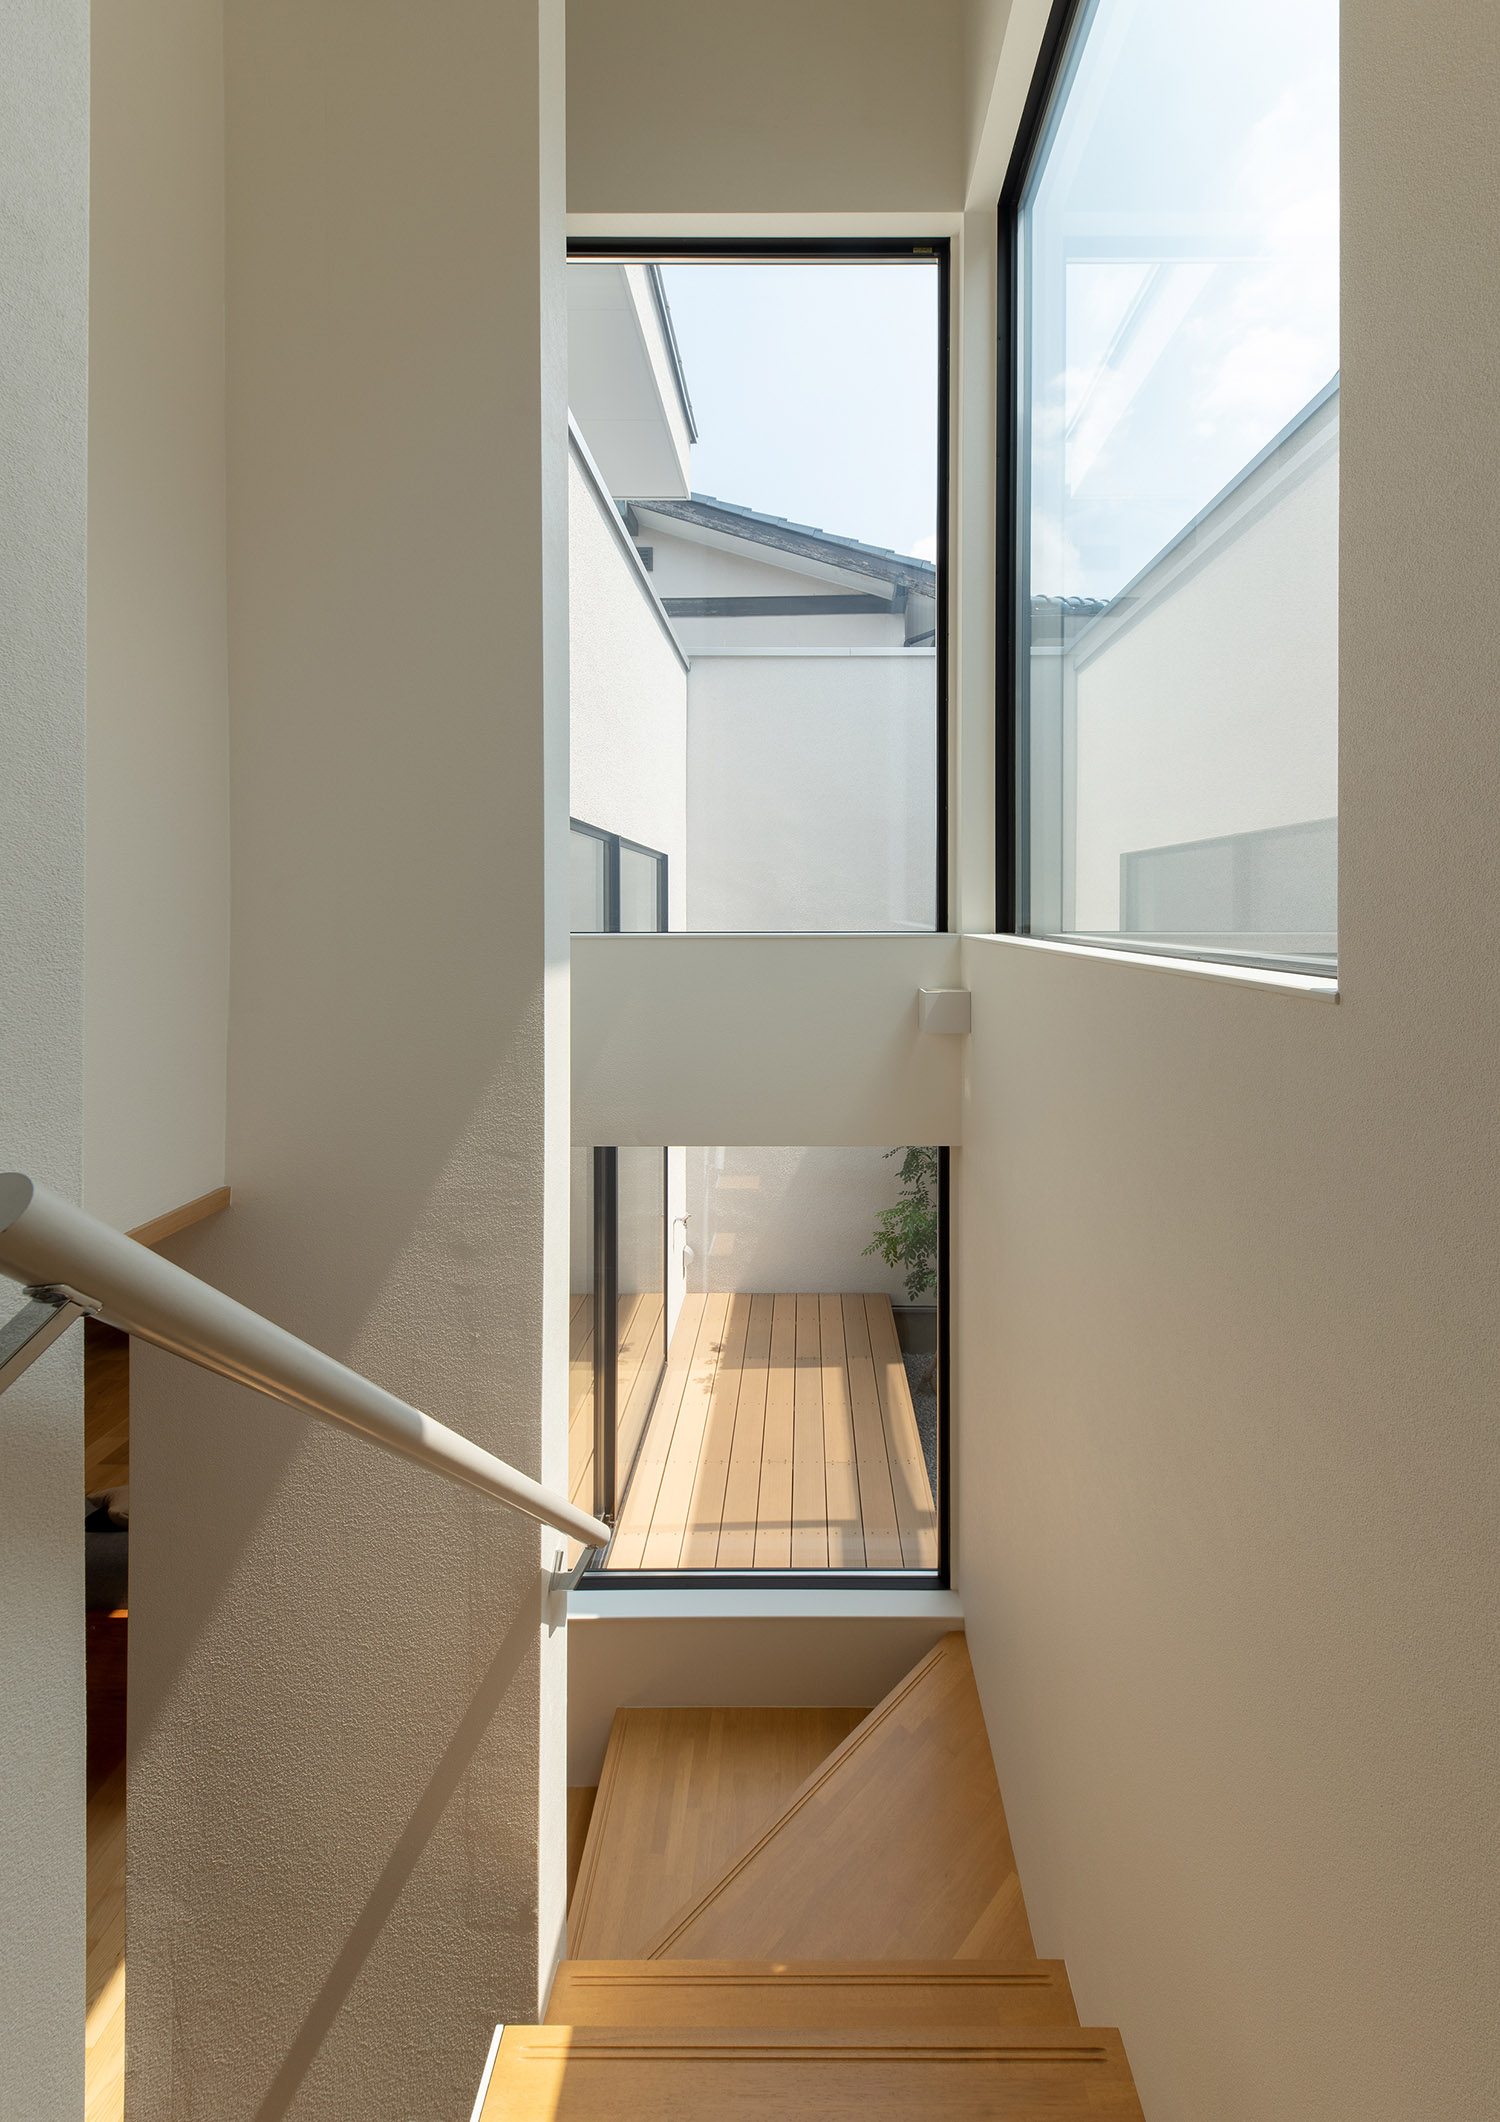 バルコニーと繋がっているように見える窓がある開放的な階段室・デザイン住宅